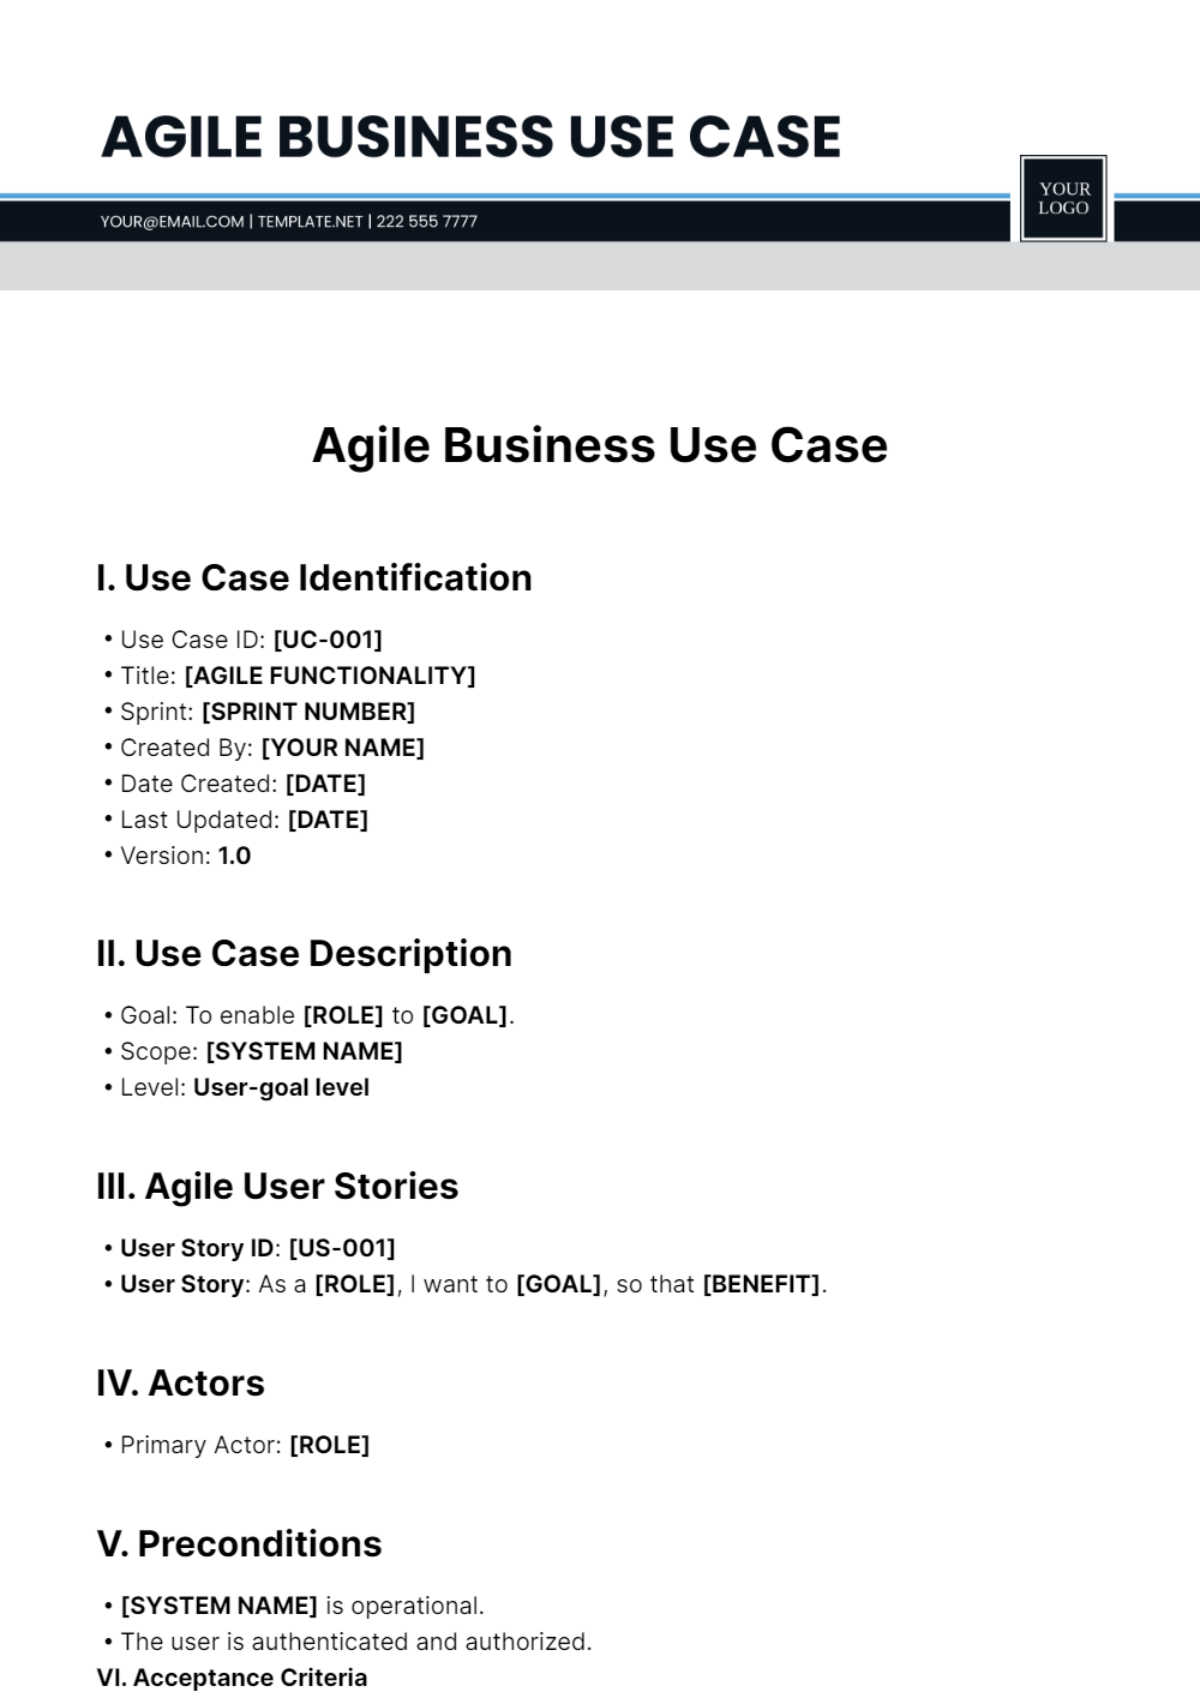 Agile Business Use Case Template